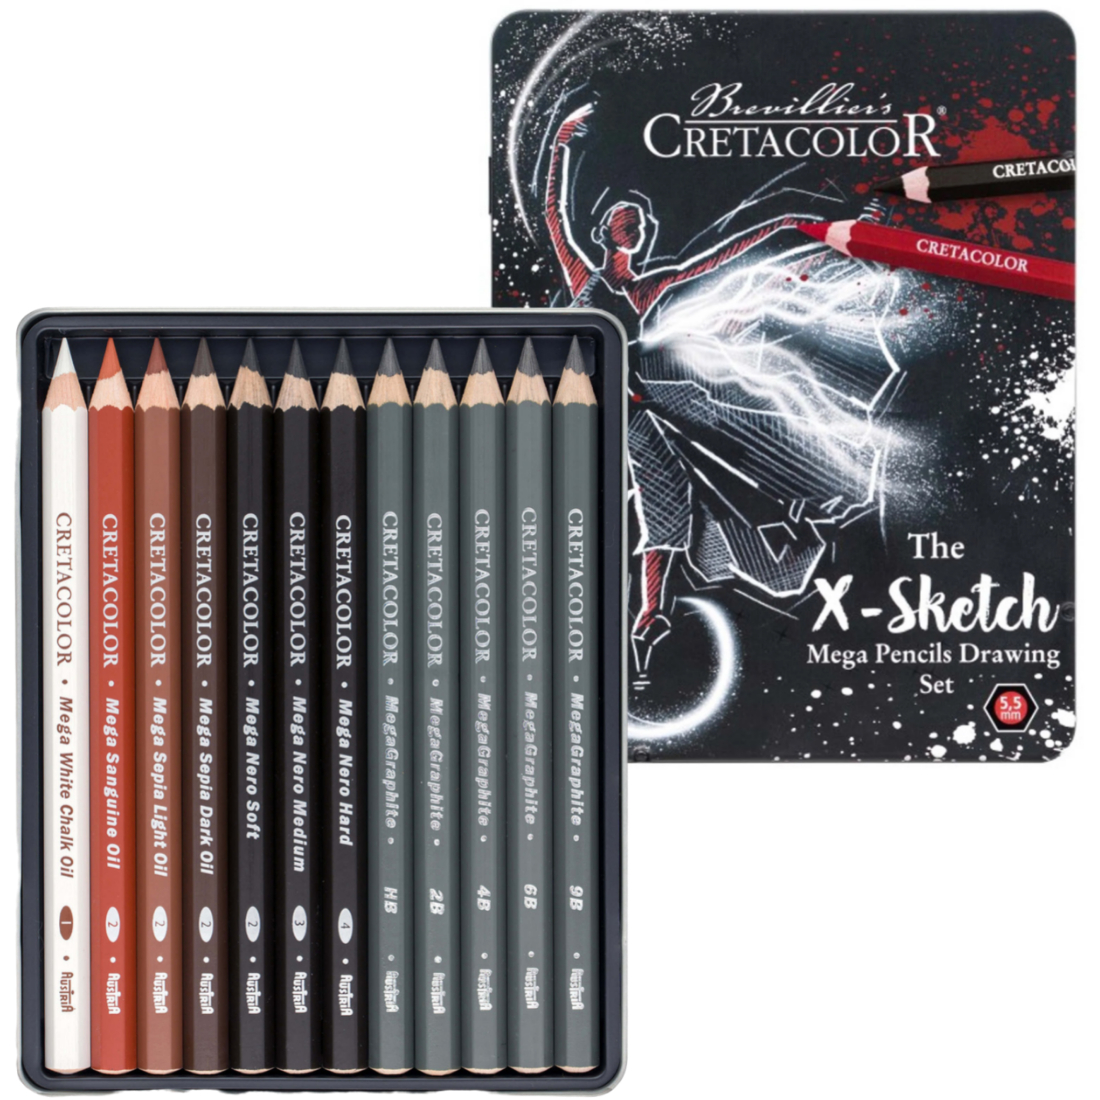 Cretacolor X-Sketch Mega Pencil Drawing Set of 12